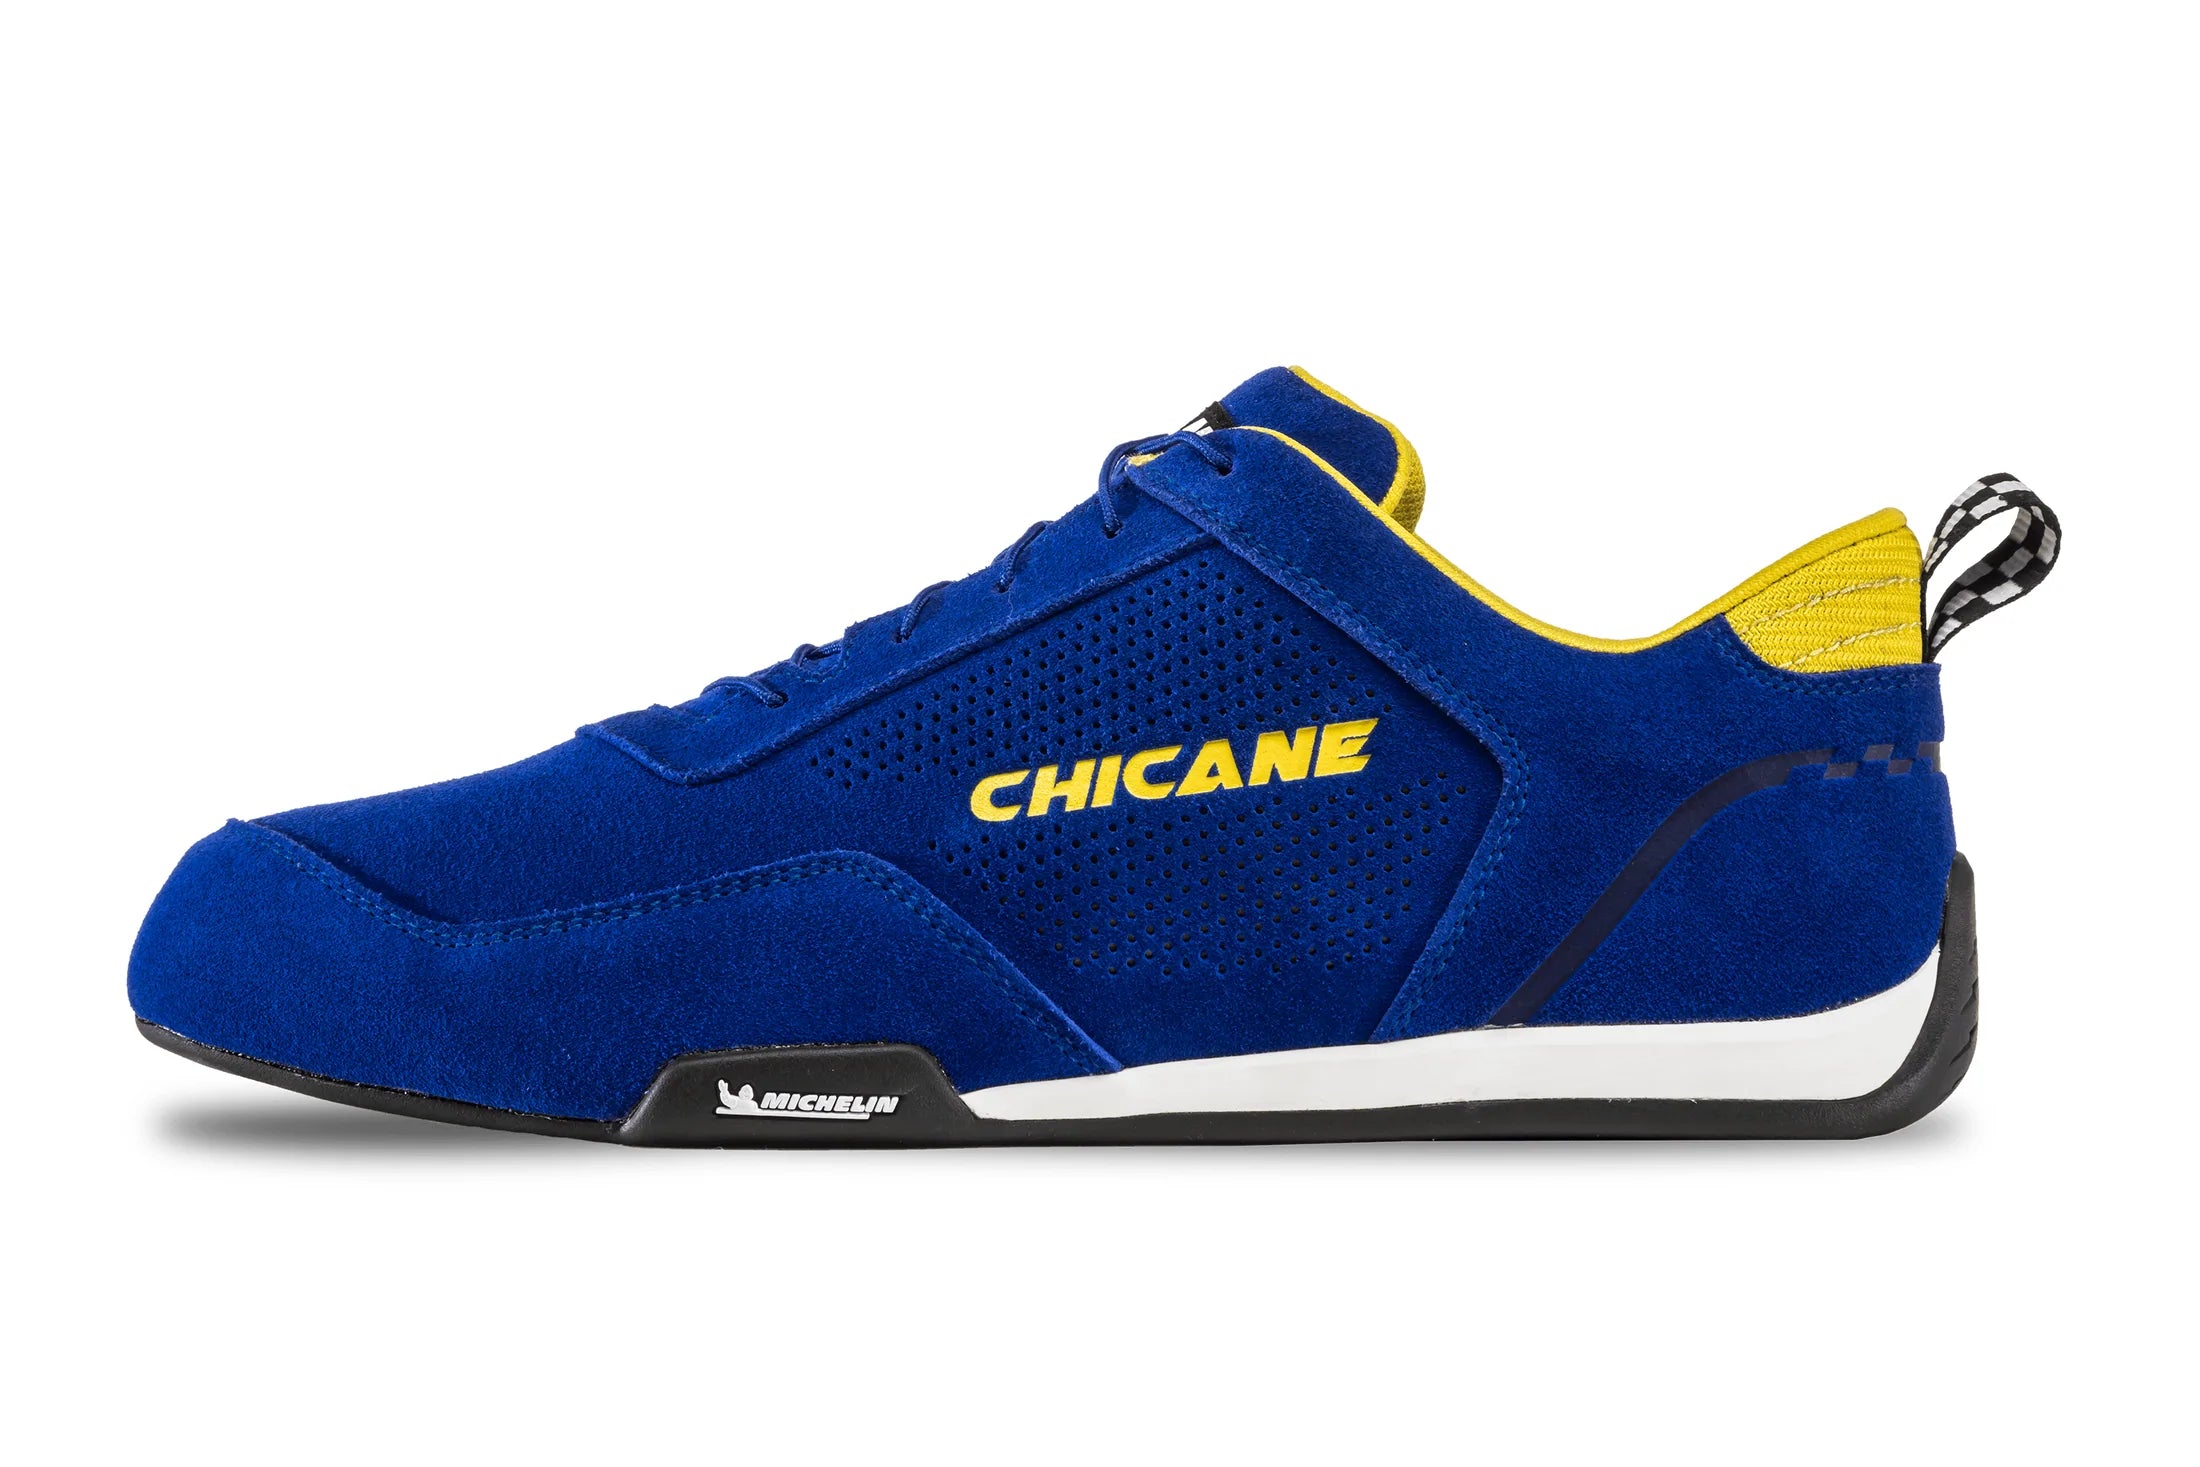 Chicane Men's Speedster Racing Shoe